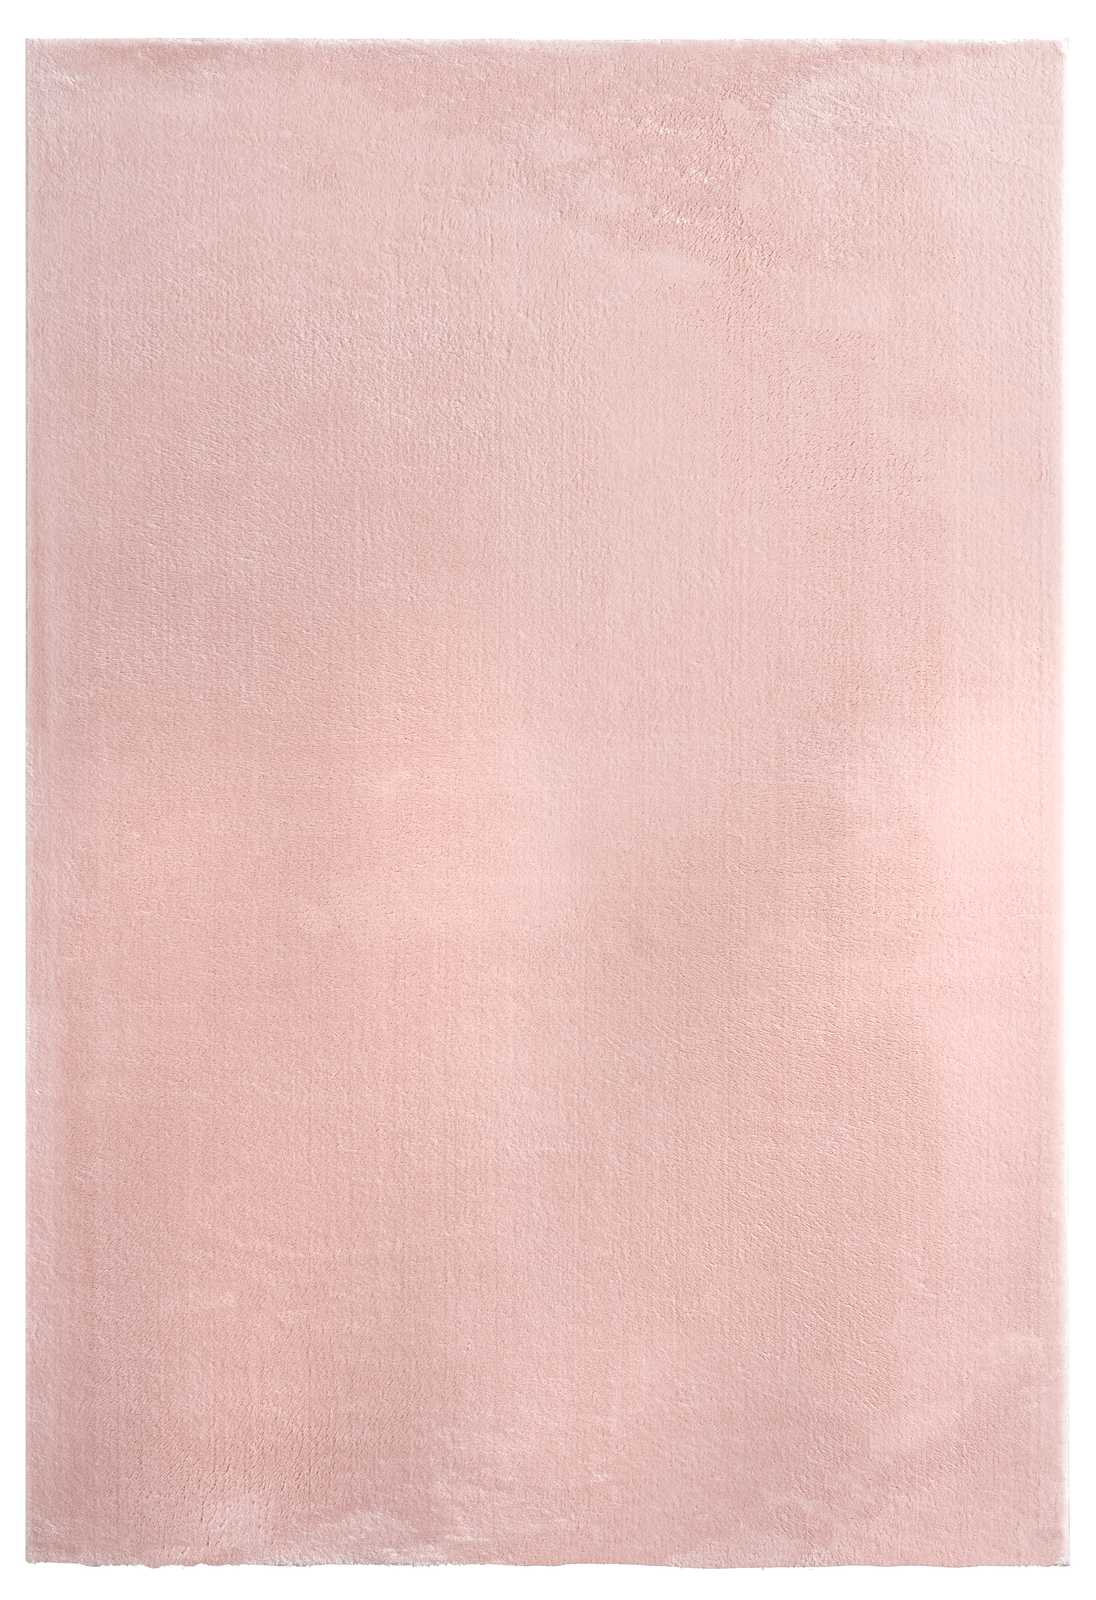             Tapis rose à poils longs - 110 x 60 cm
        